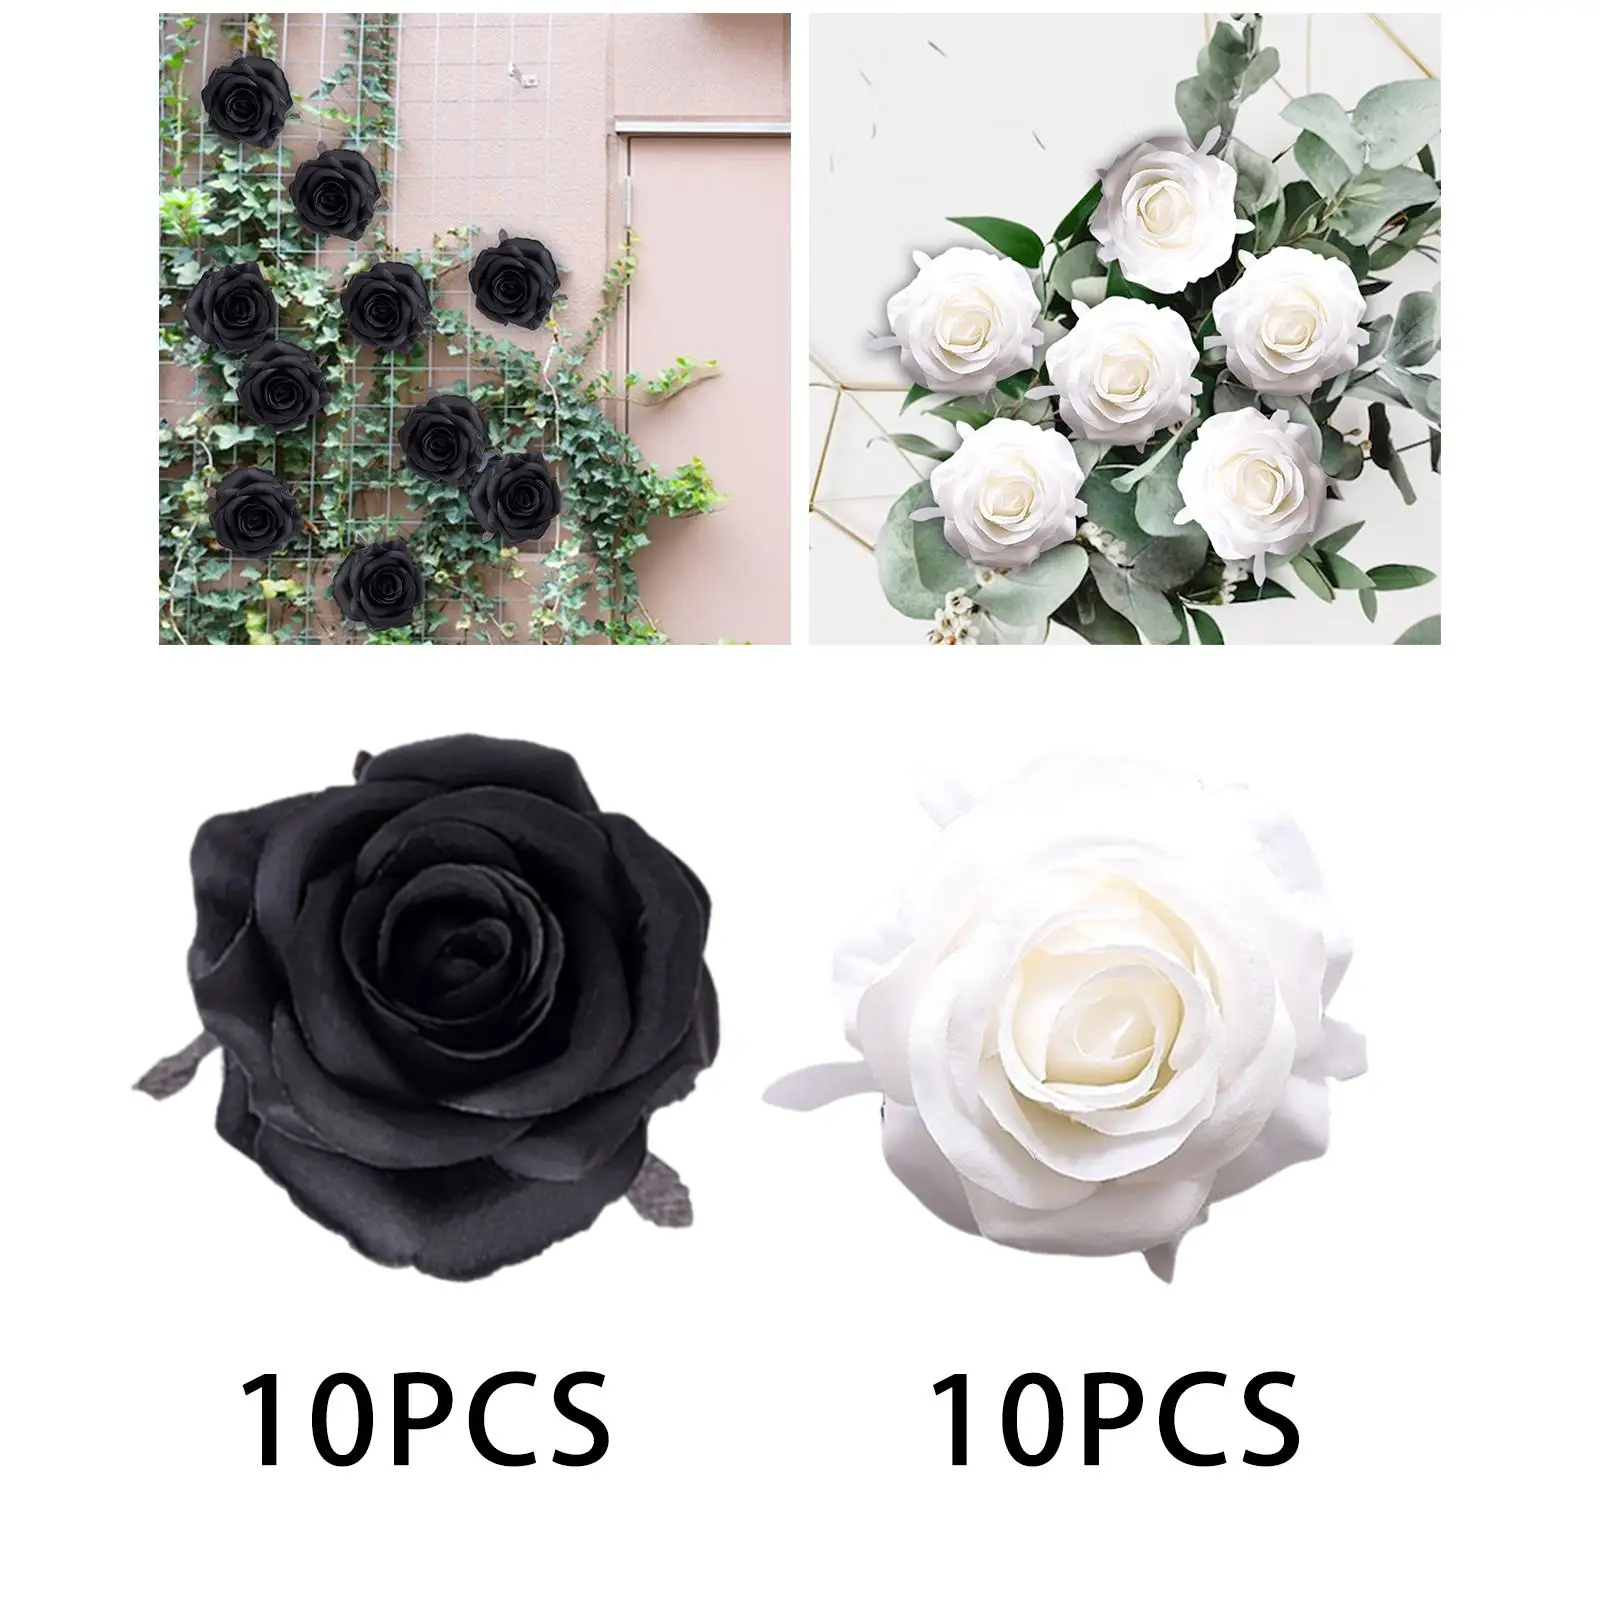 10Pcs Artificial Silk Flower Heads Floral Arrangements Craft DIY for Party Halloween Bouquets Centerpieces Decorative